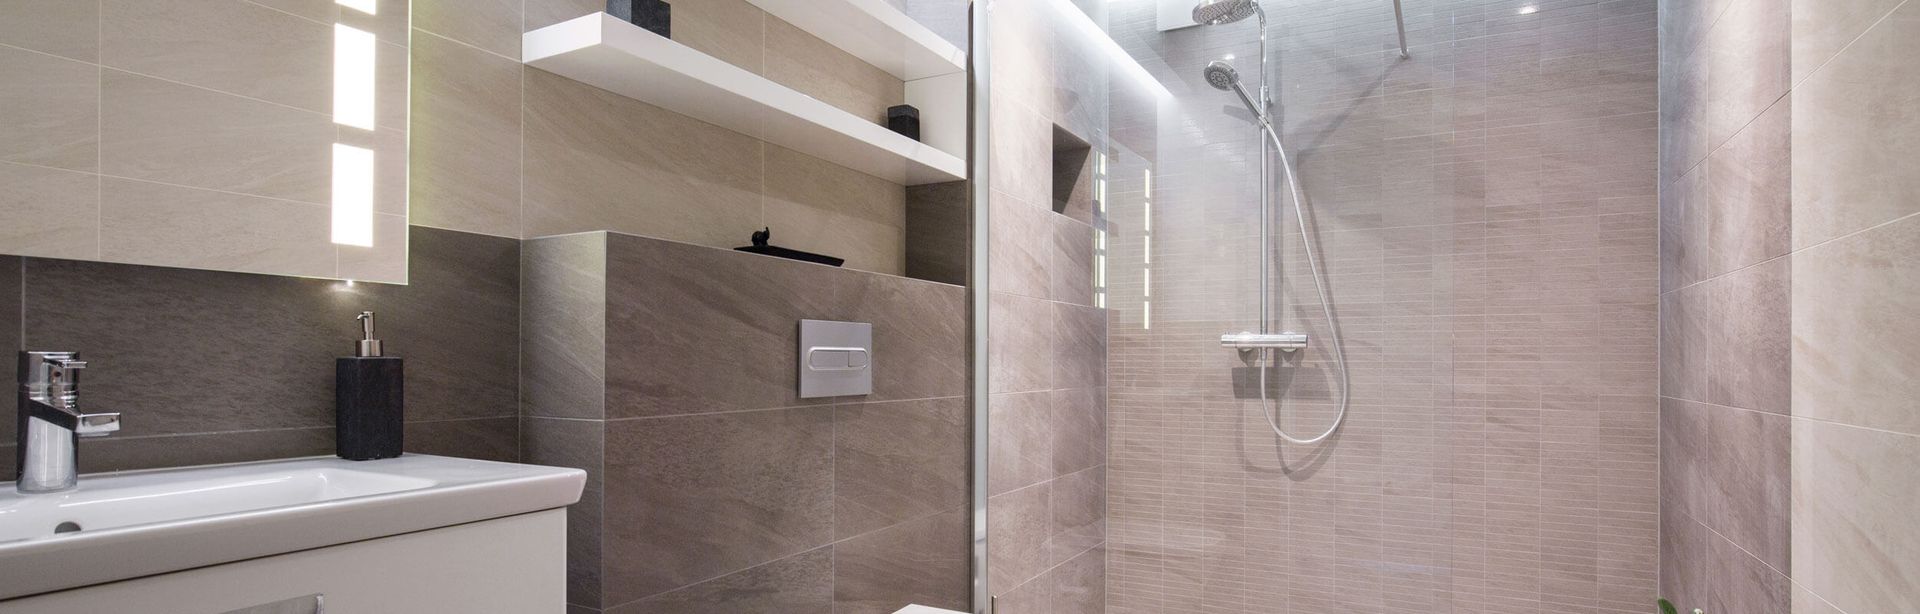 Modernes Badezimmer mit Wandfliesen